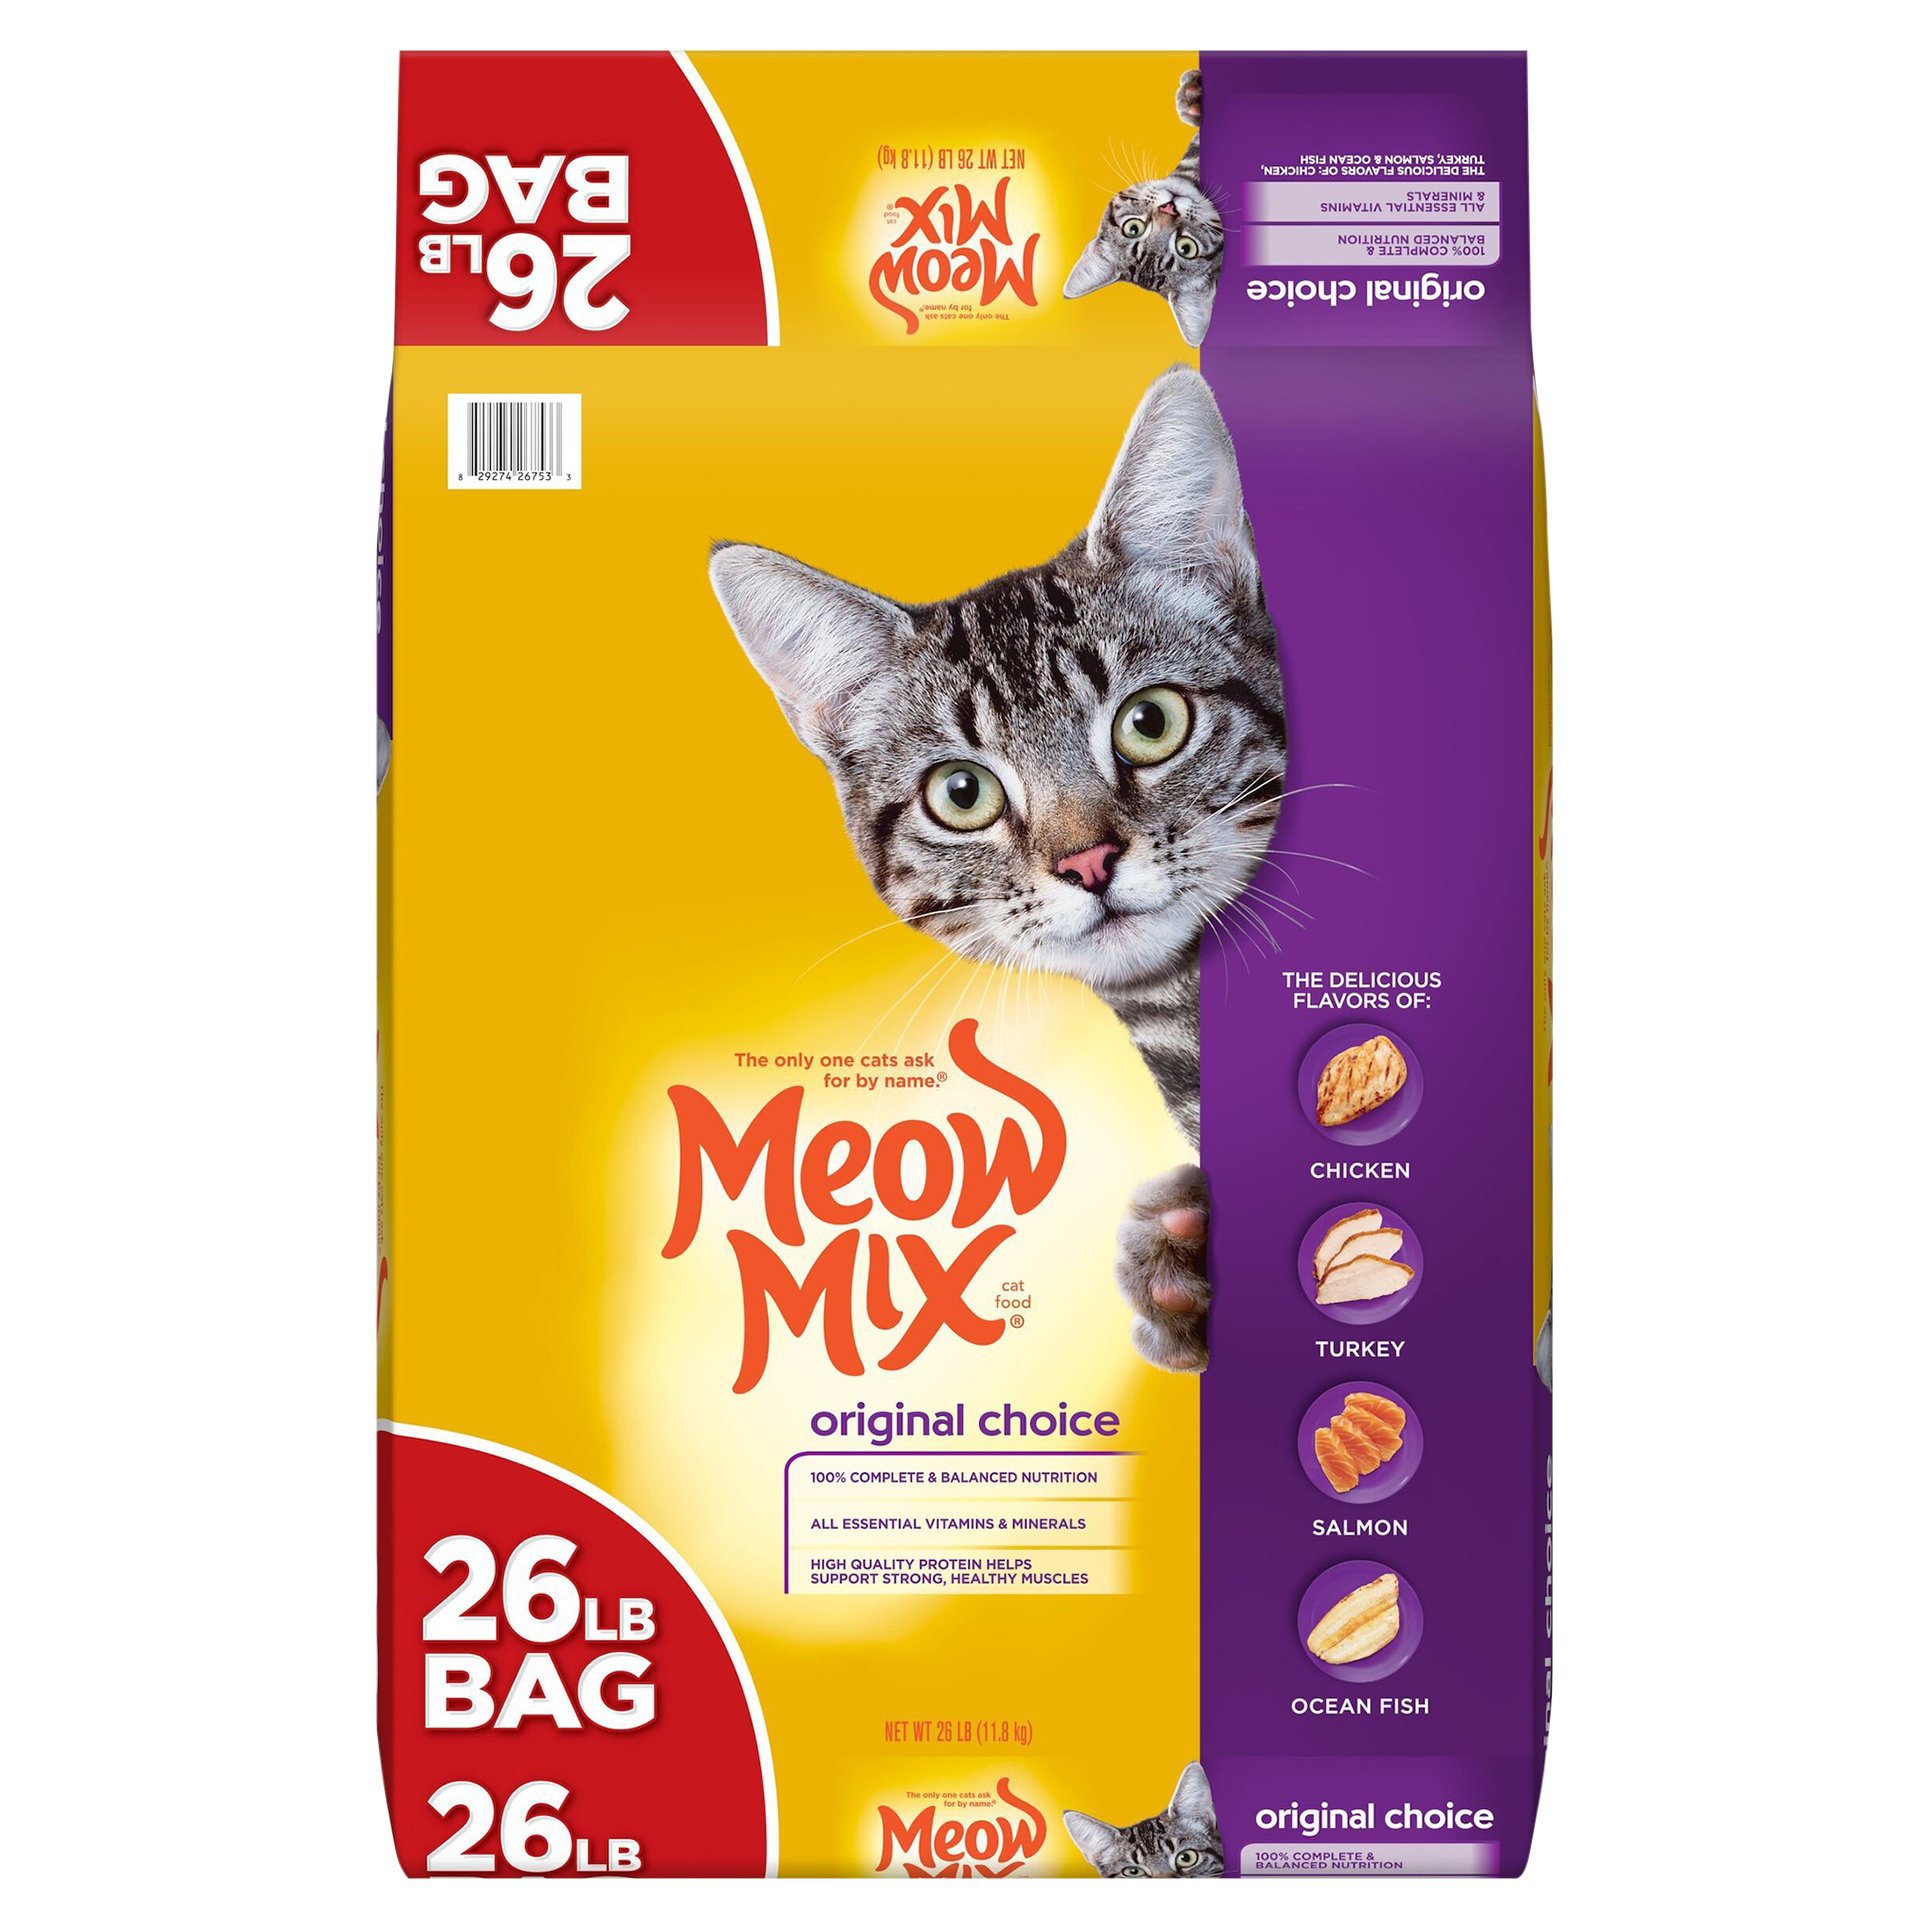 Meow Mix Original Choice Cat Food Shop Cats at HEB